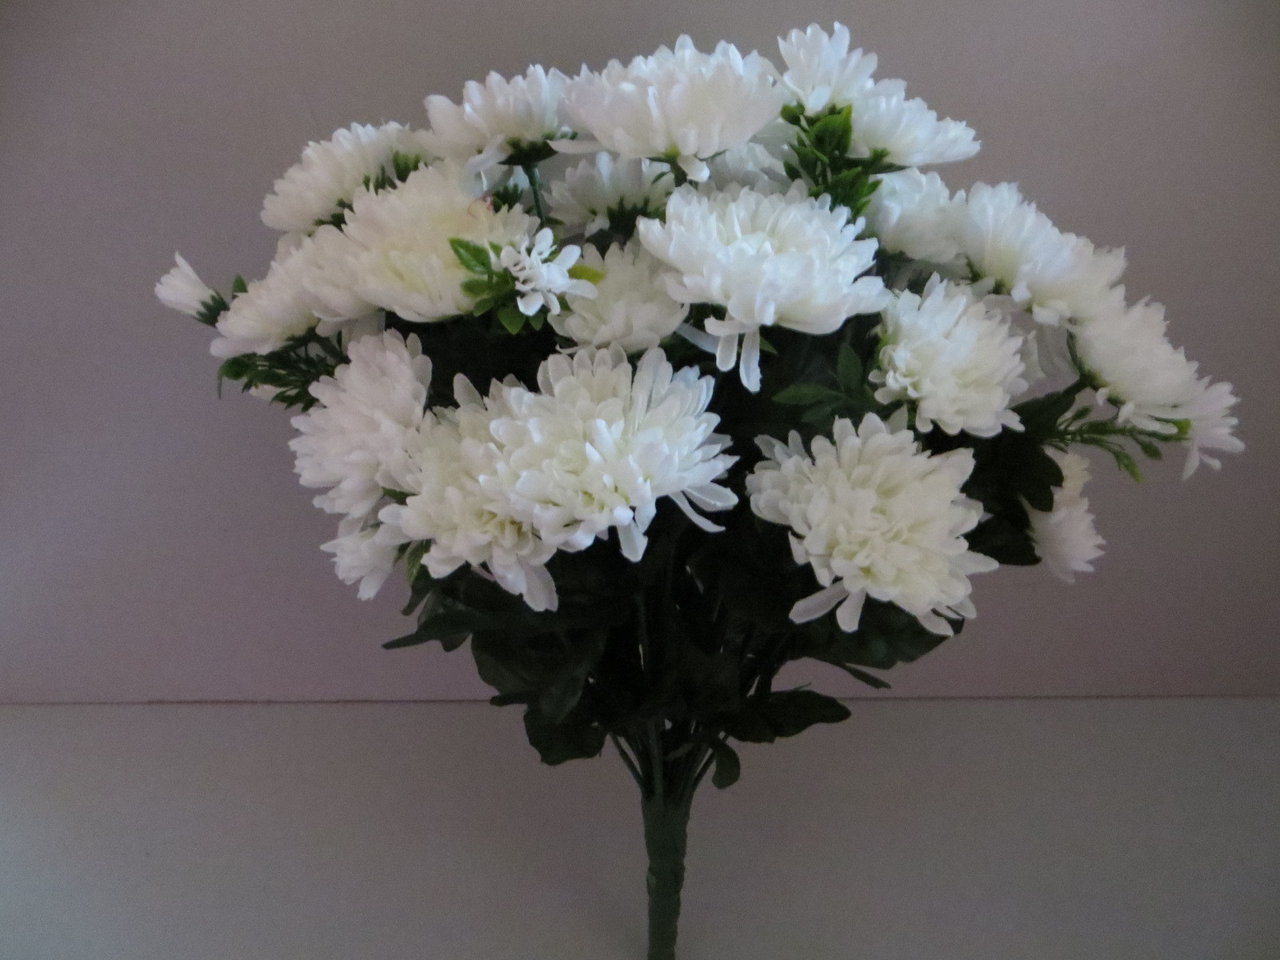 Chrysanthemenstrauß mit 36 Stielen, 36 großen Blüten und 16 kleinen Blüten Farbe: weiß-creme